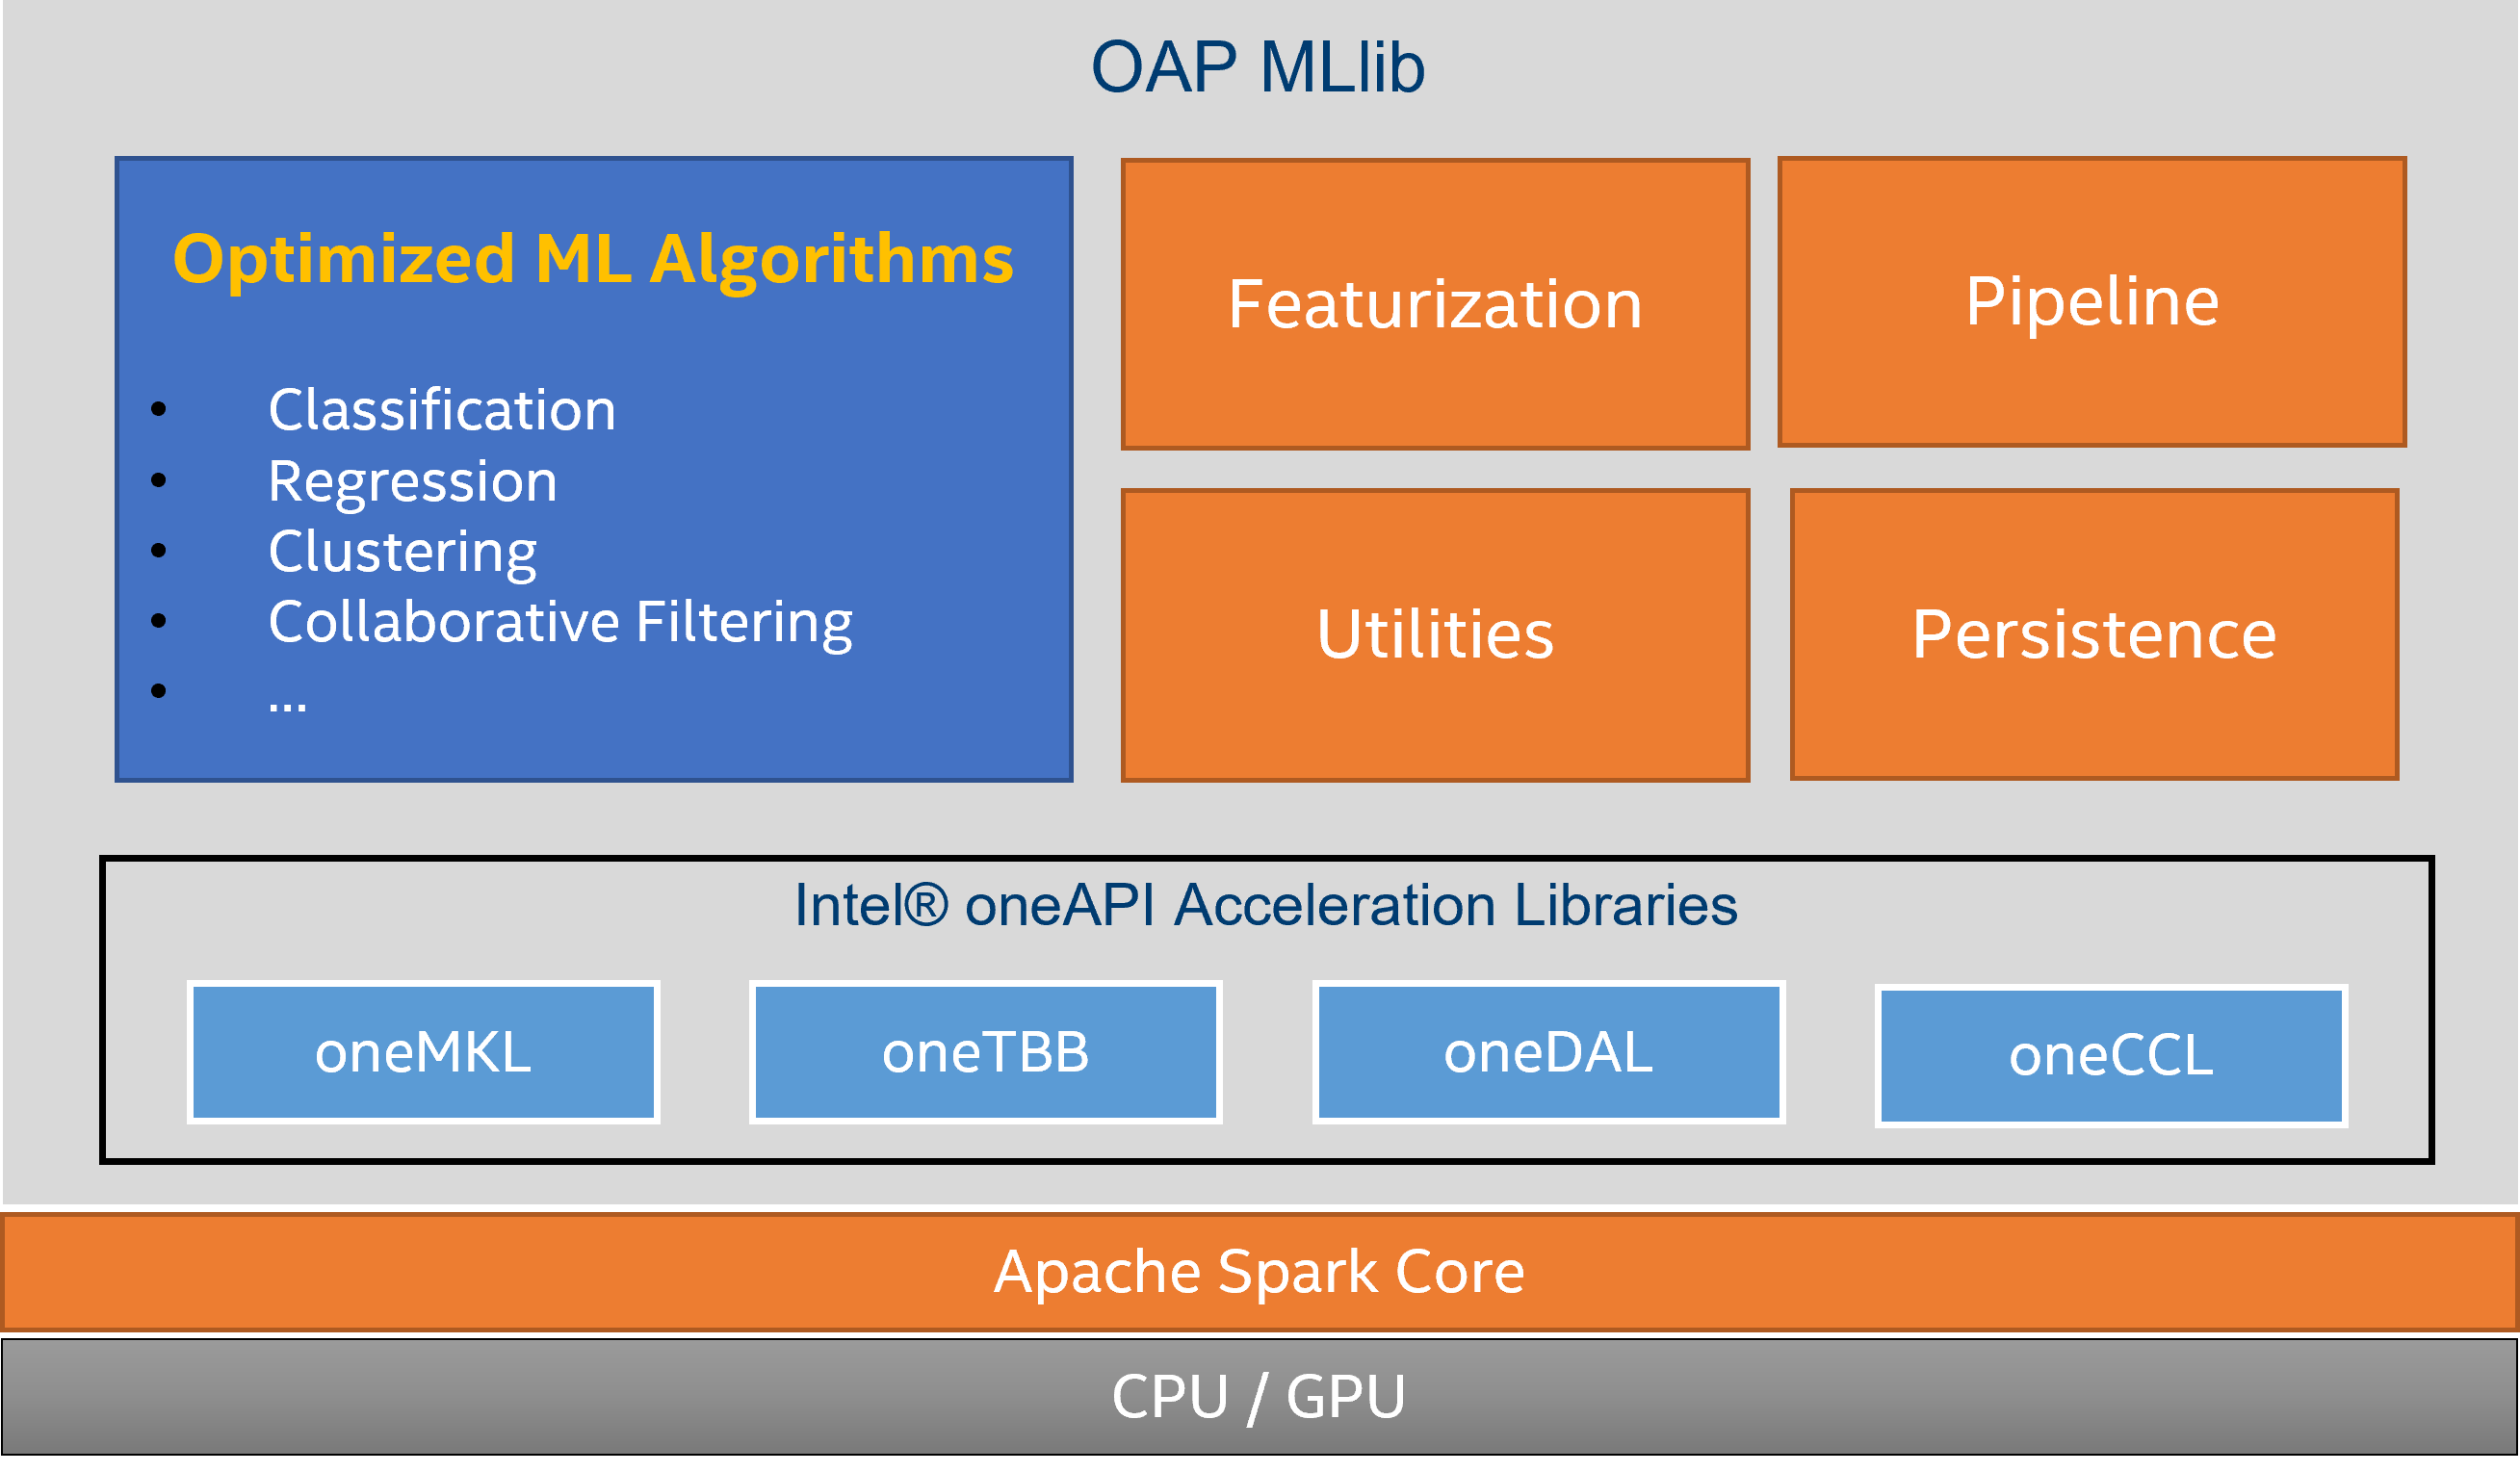 OAP MLlib Architecture